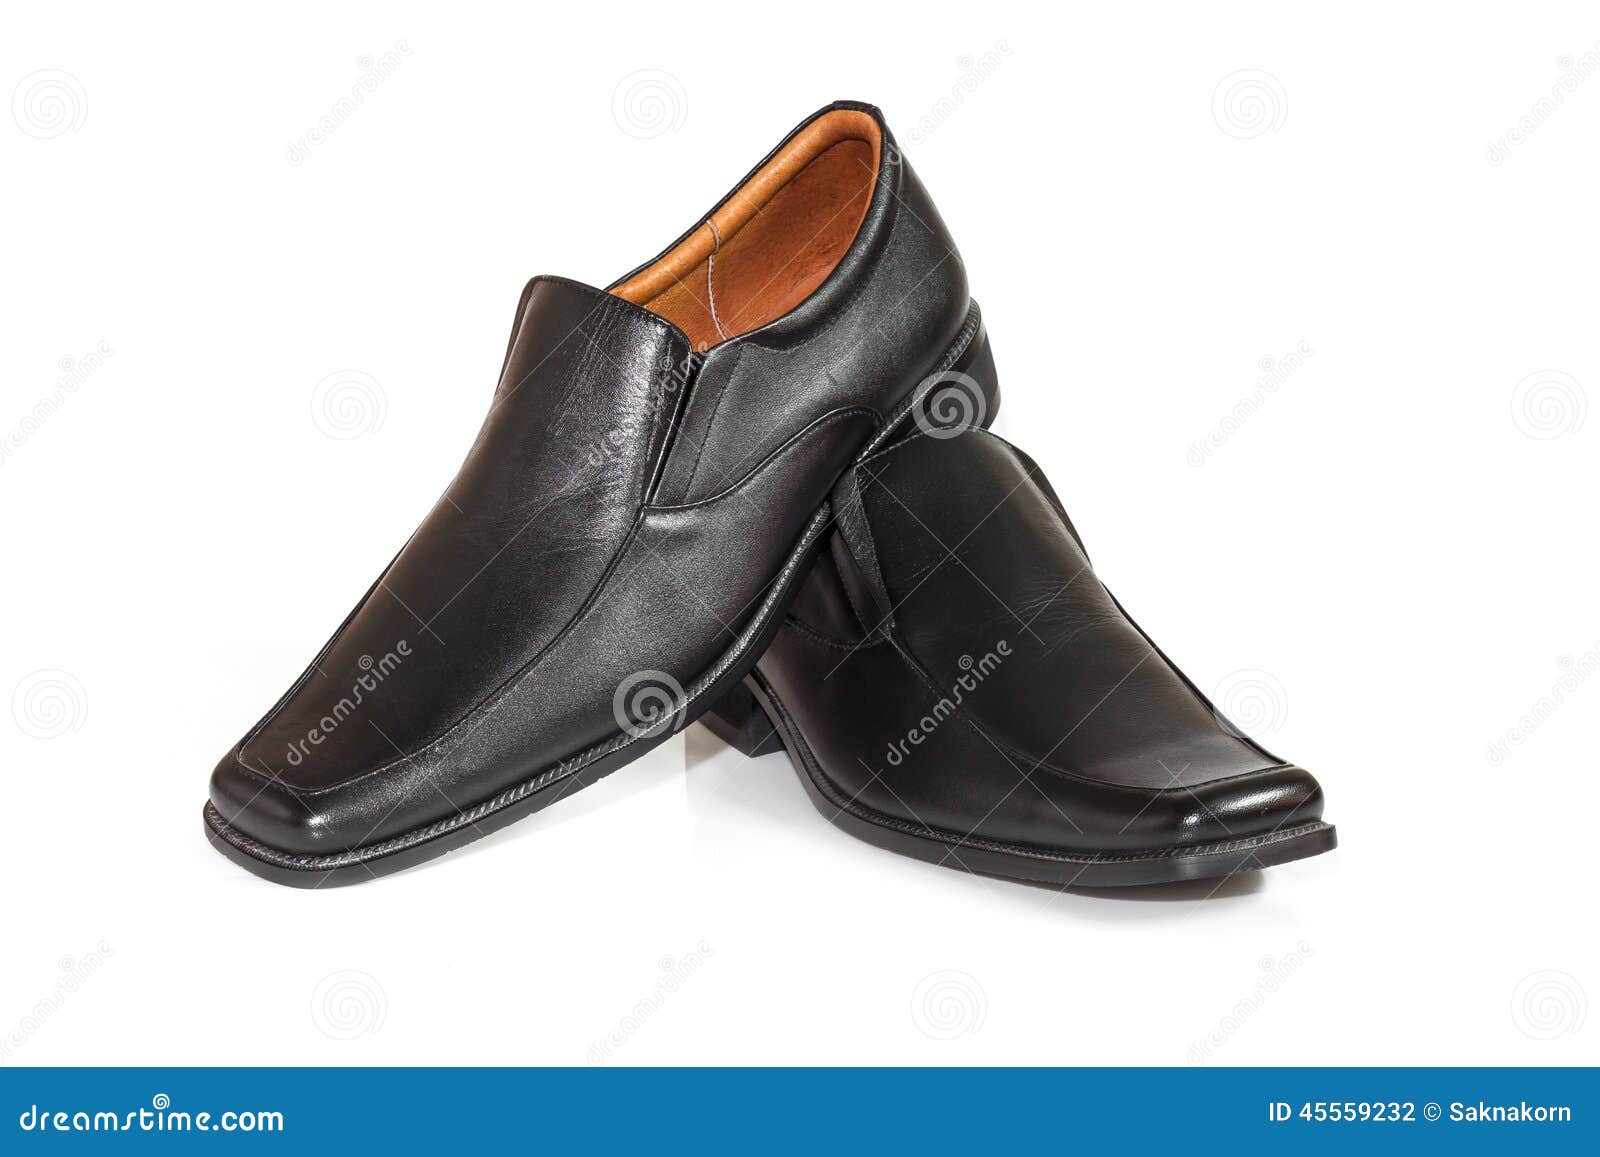 Men Shoes on White Background Stock Photo - Image of style, shiny: 45559232